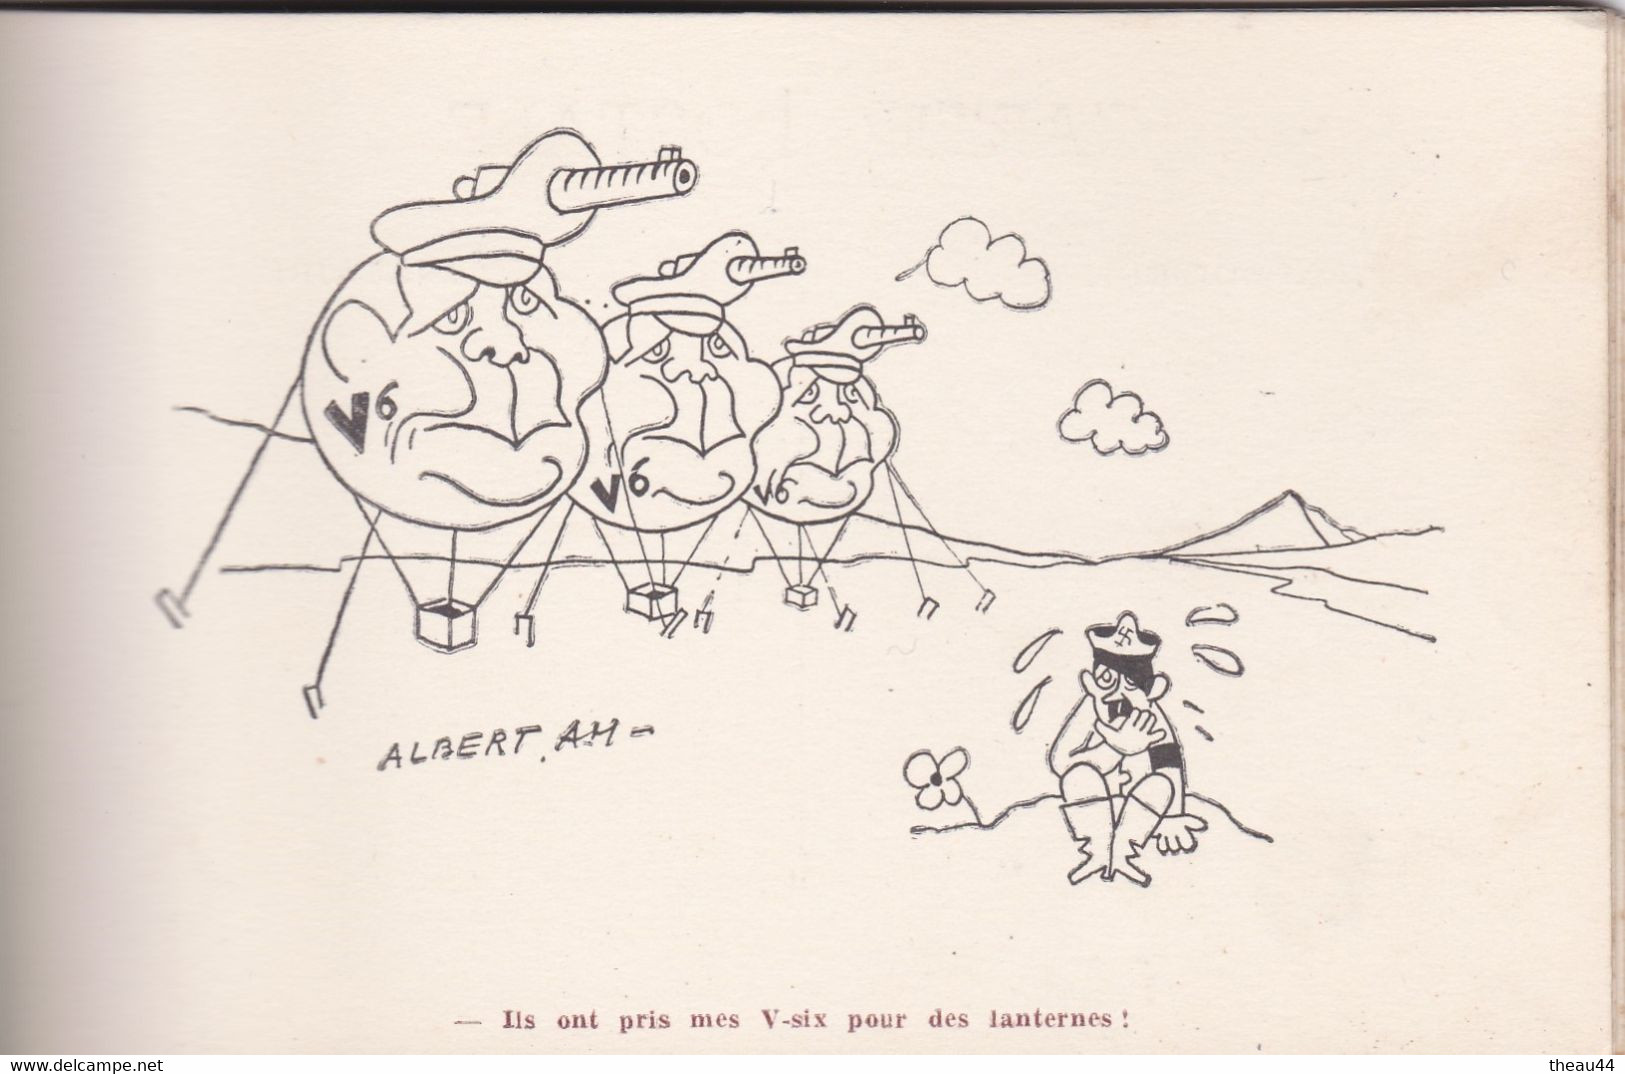 Carnet de 10 Cartes de l'Illustrateur "Albert AM" -Caricature de "Hitler" - Sur ses Pas - 2e Guerre Mondiale - Politique